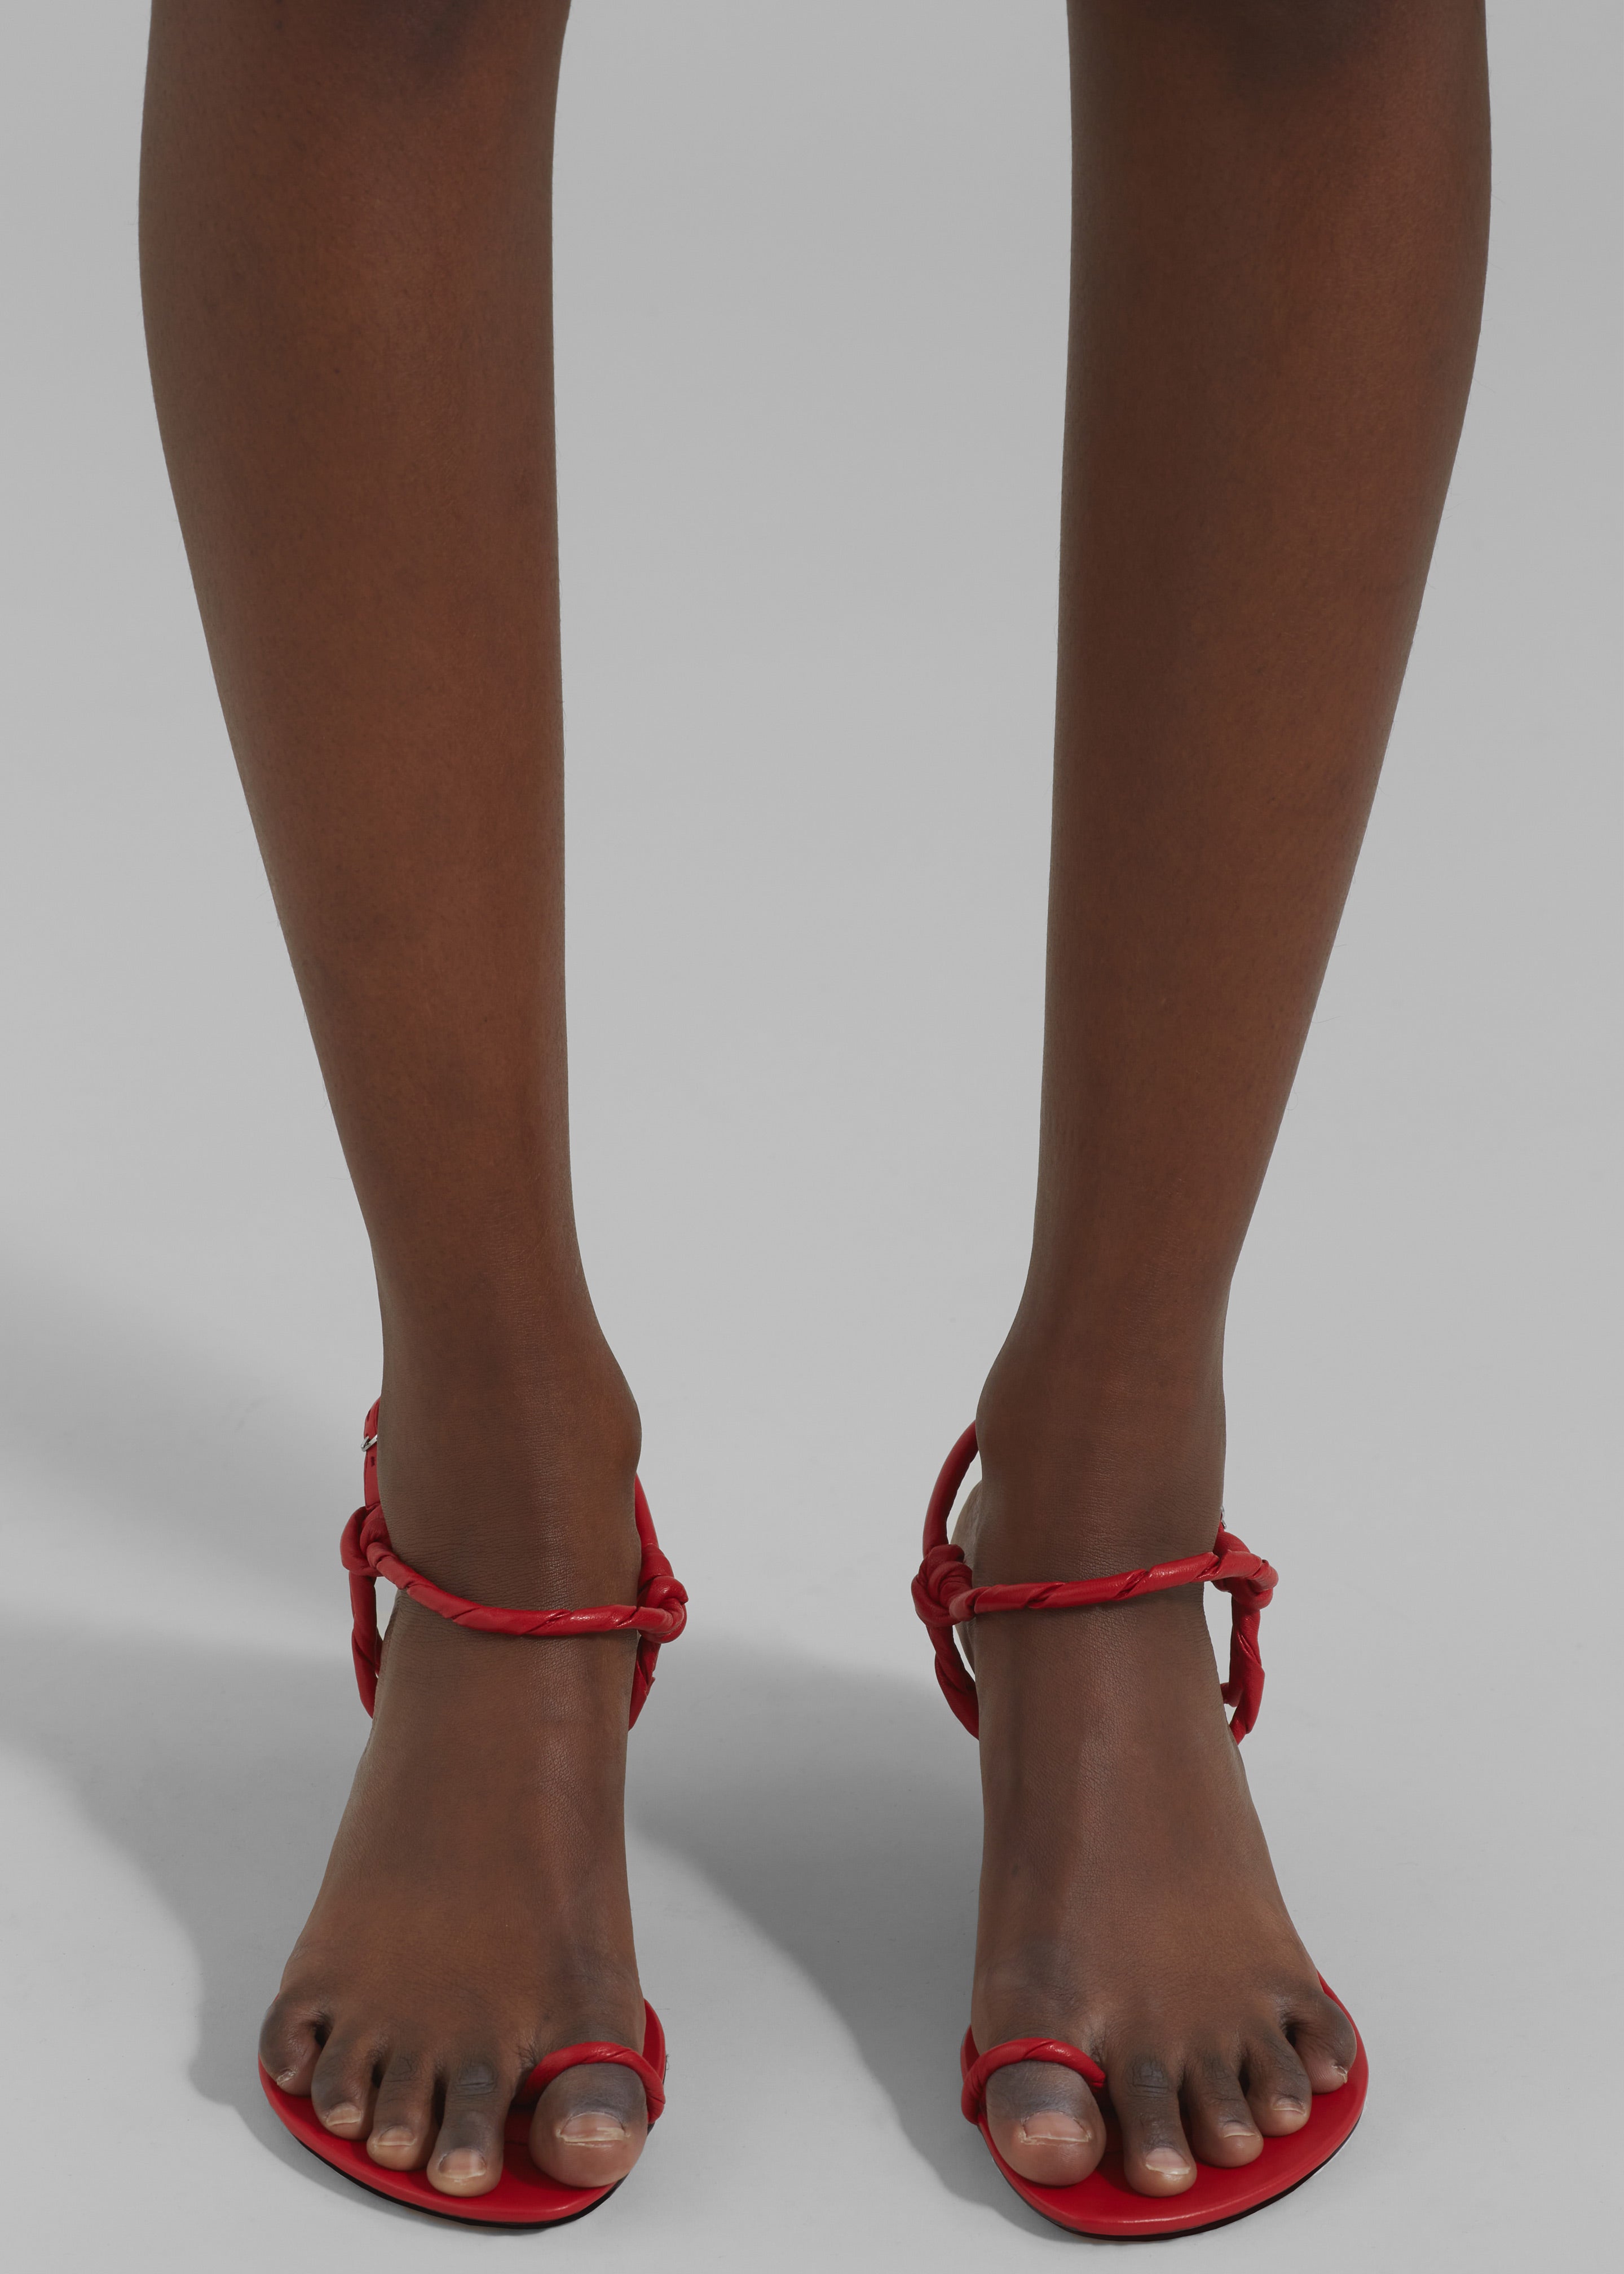 Proenza Schouler Tee Toe Ring Sandals - Red - 7